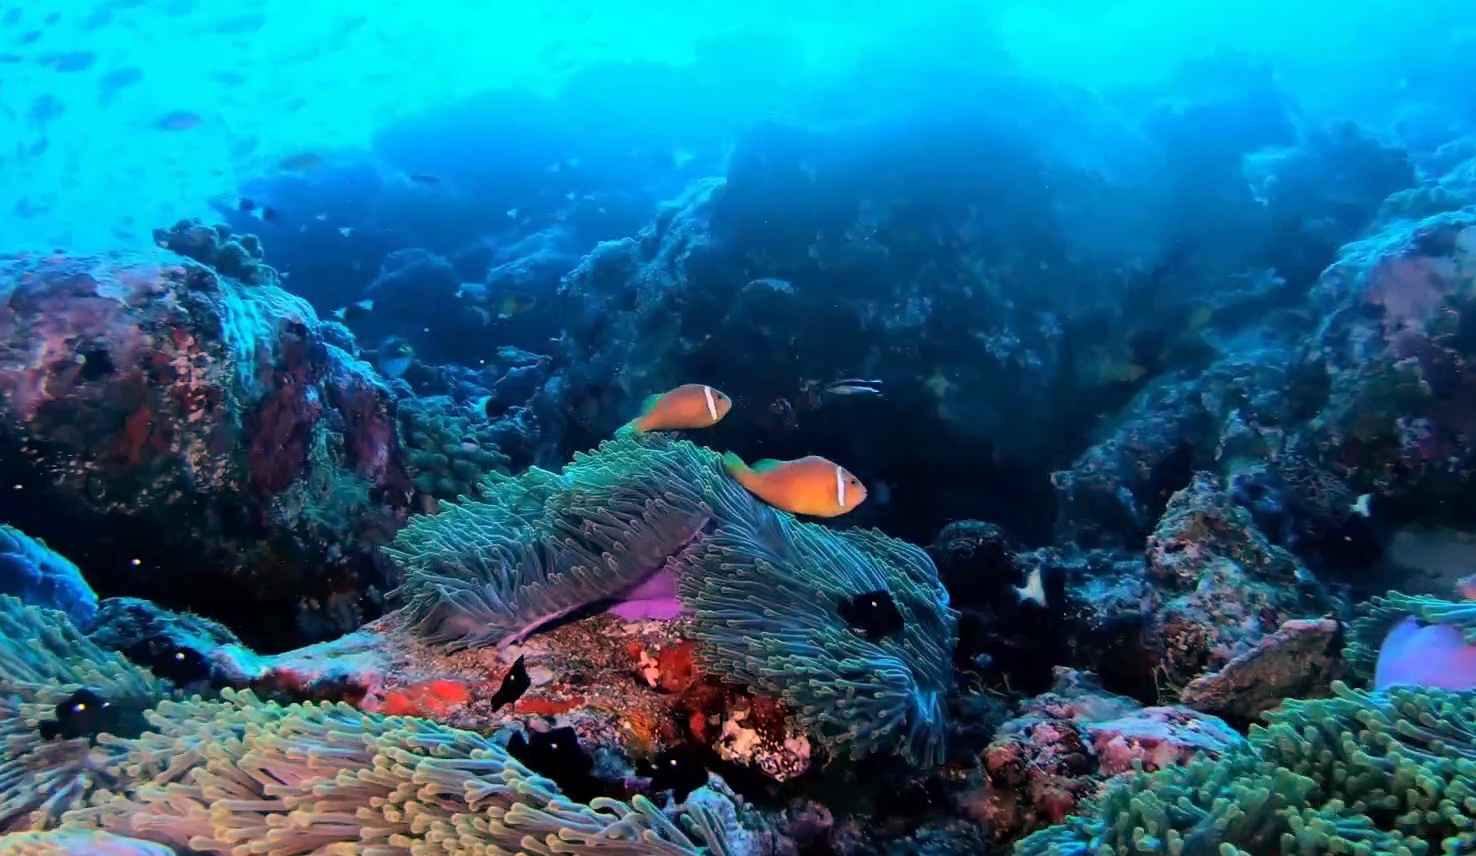 Pesce Pagliaccio delle Maldive - Amphiprion nigripes - Maldive Anemonefish - blackfinned Anemonefish - www.intotheblue.it